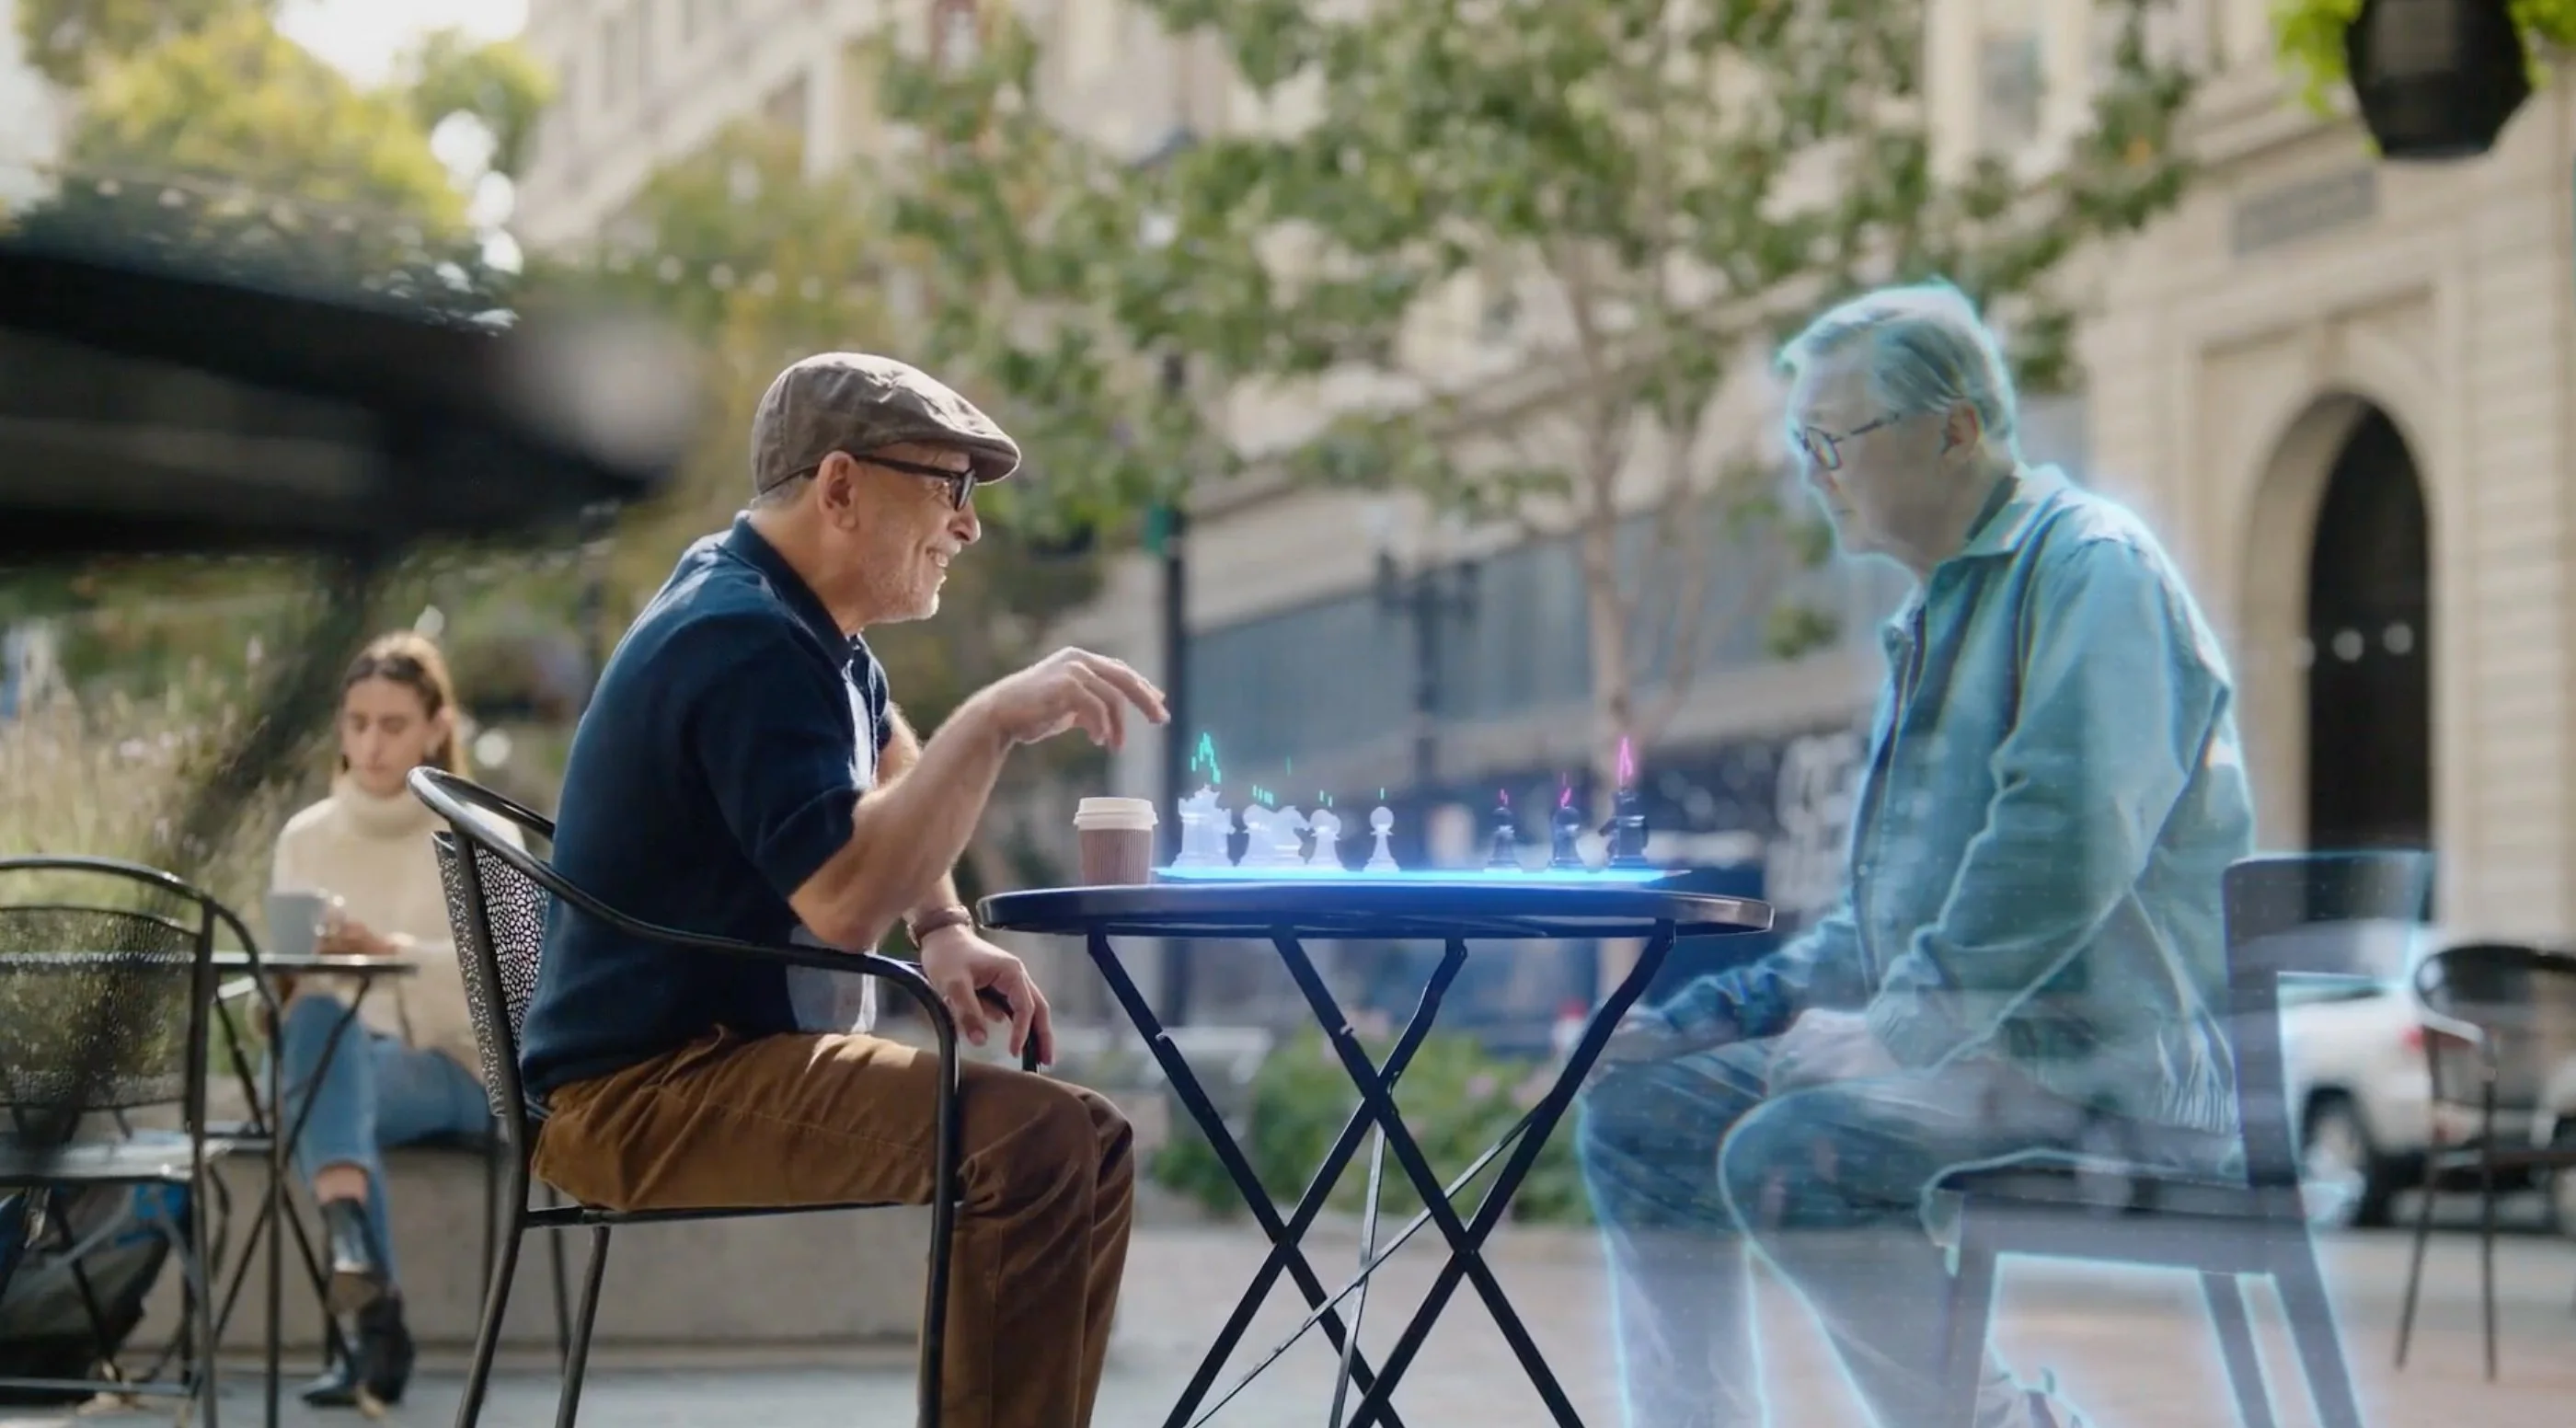 El Metaverso en el futuro, dos personas jugando al ajedrez virtualmente viéndose mediante hologramas